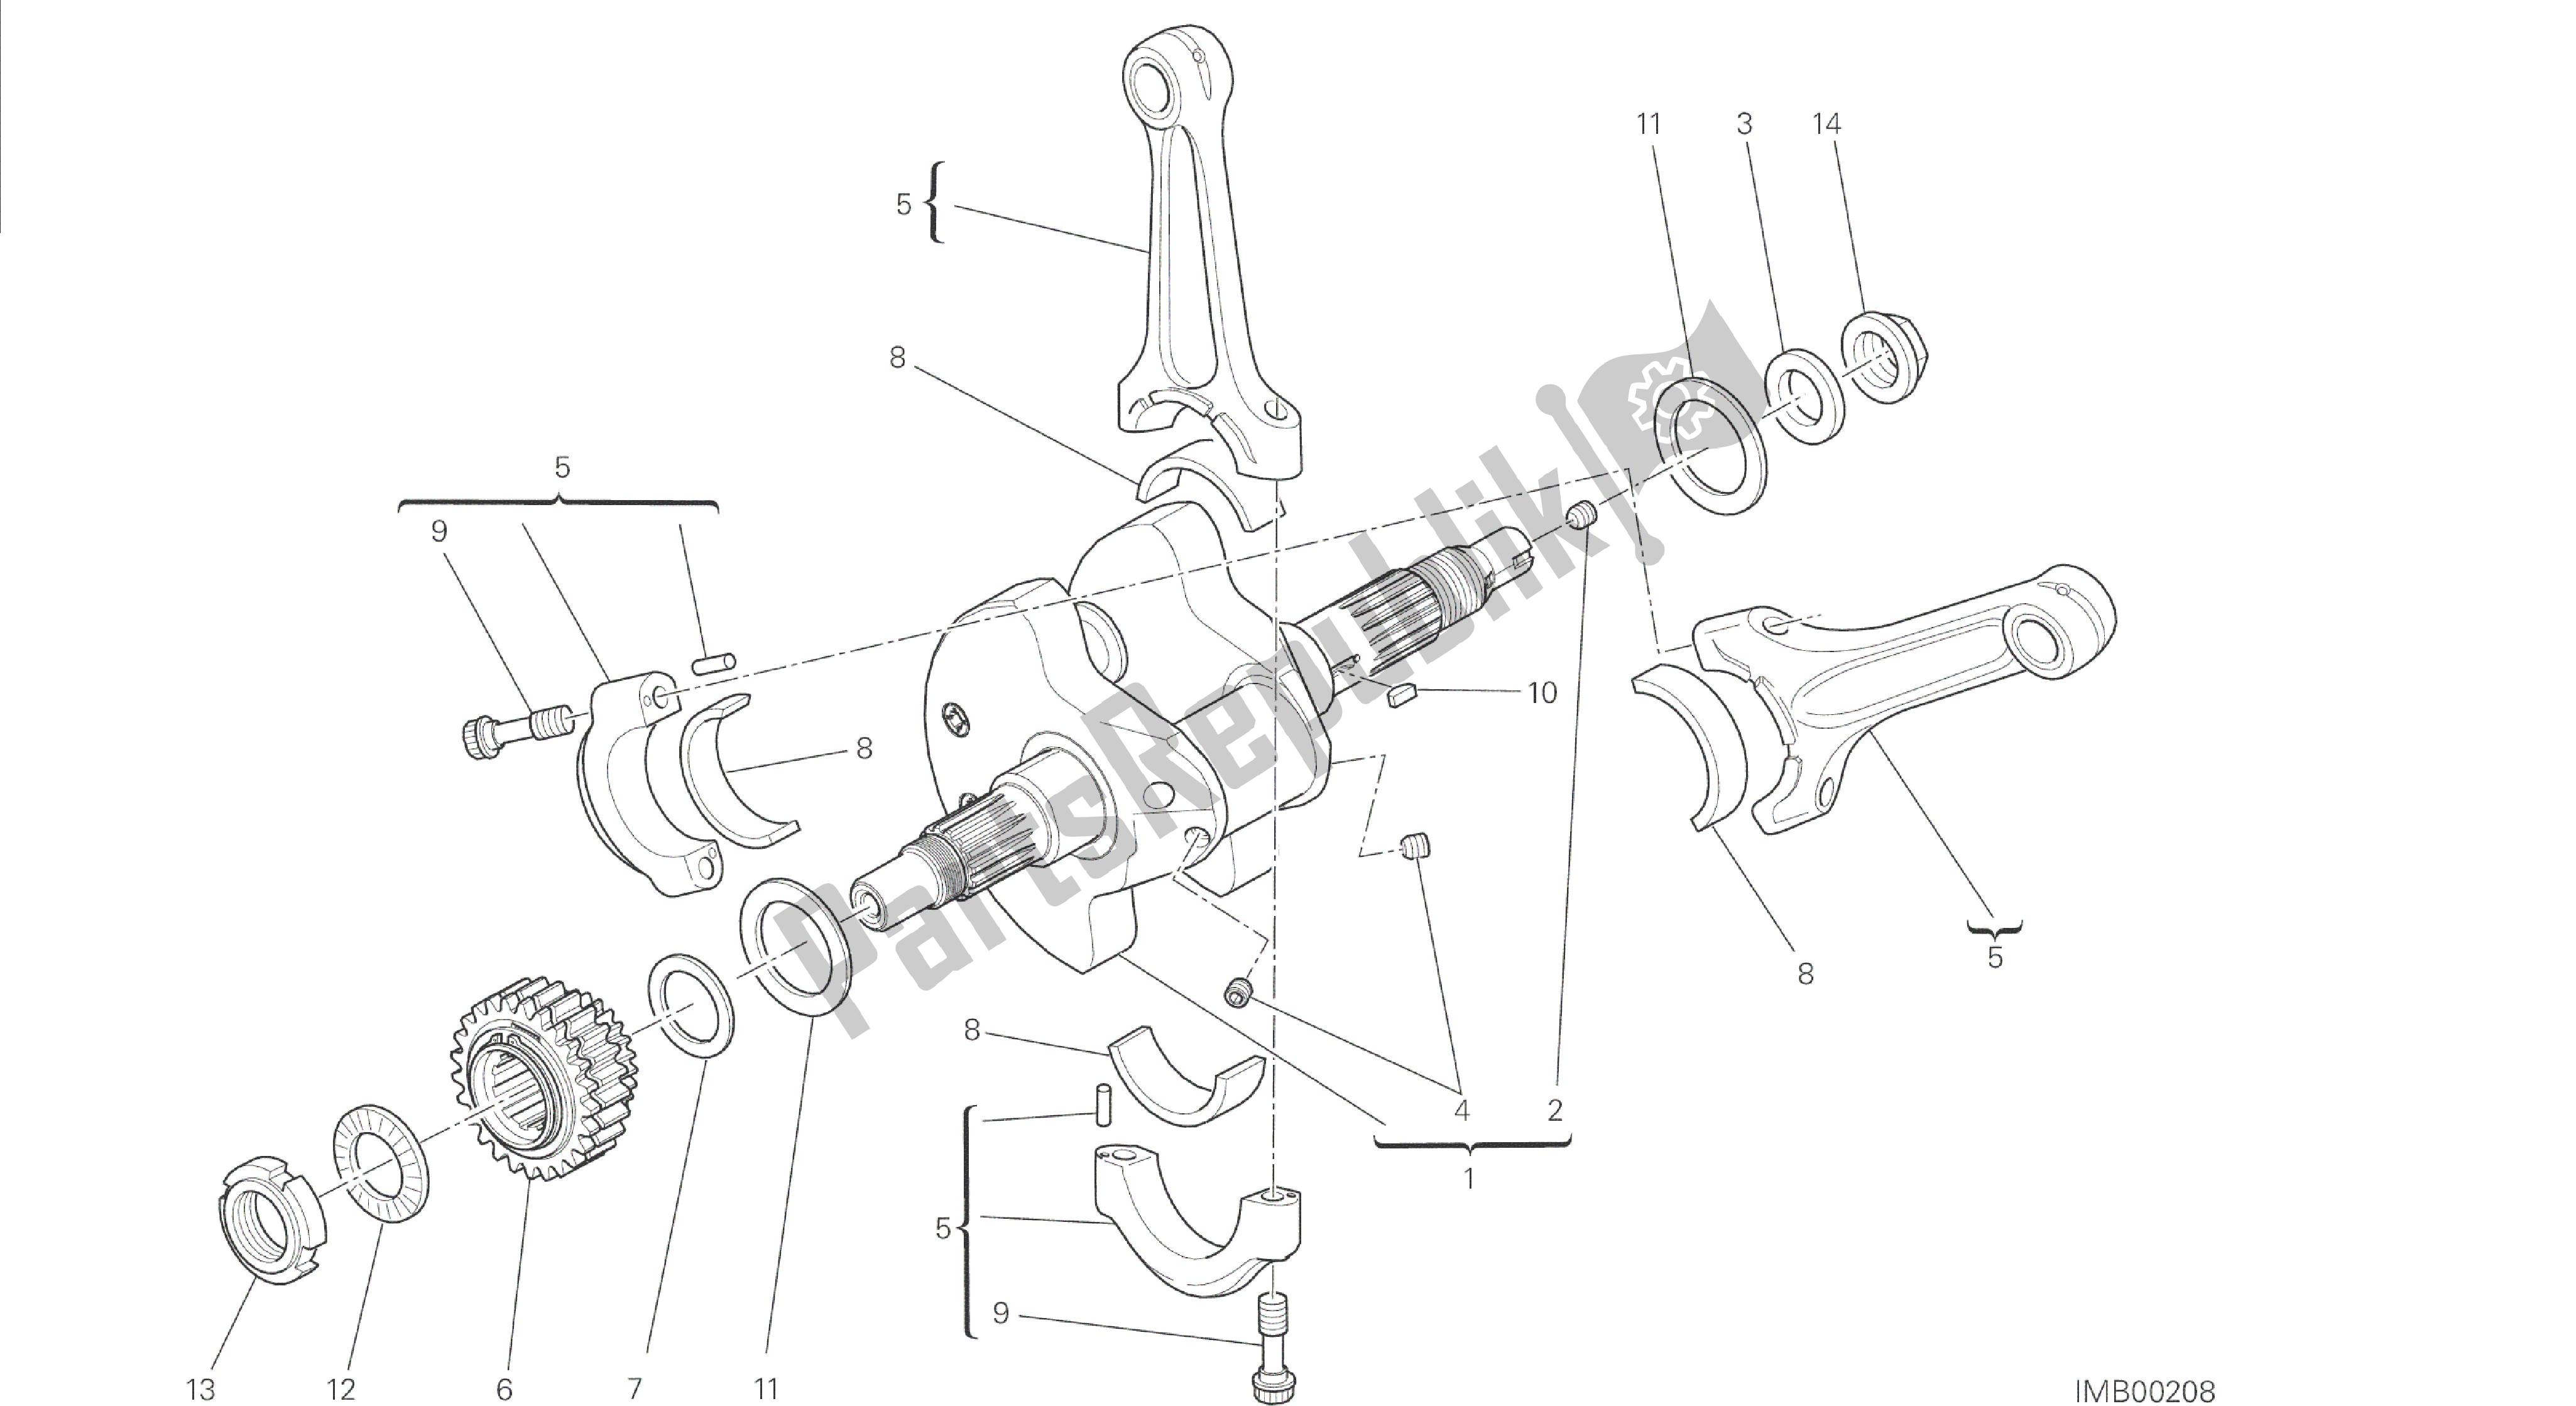 Tutte le parti per il Disegno 006 - Gruppo Motore Bielle [mod: Dvl] del Ducati Diavel 1200 2014